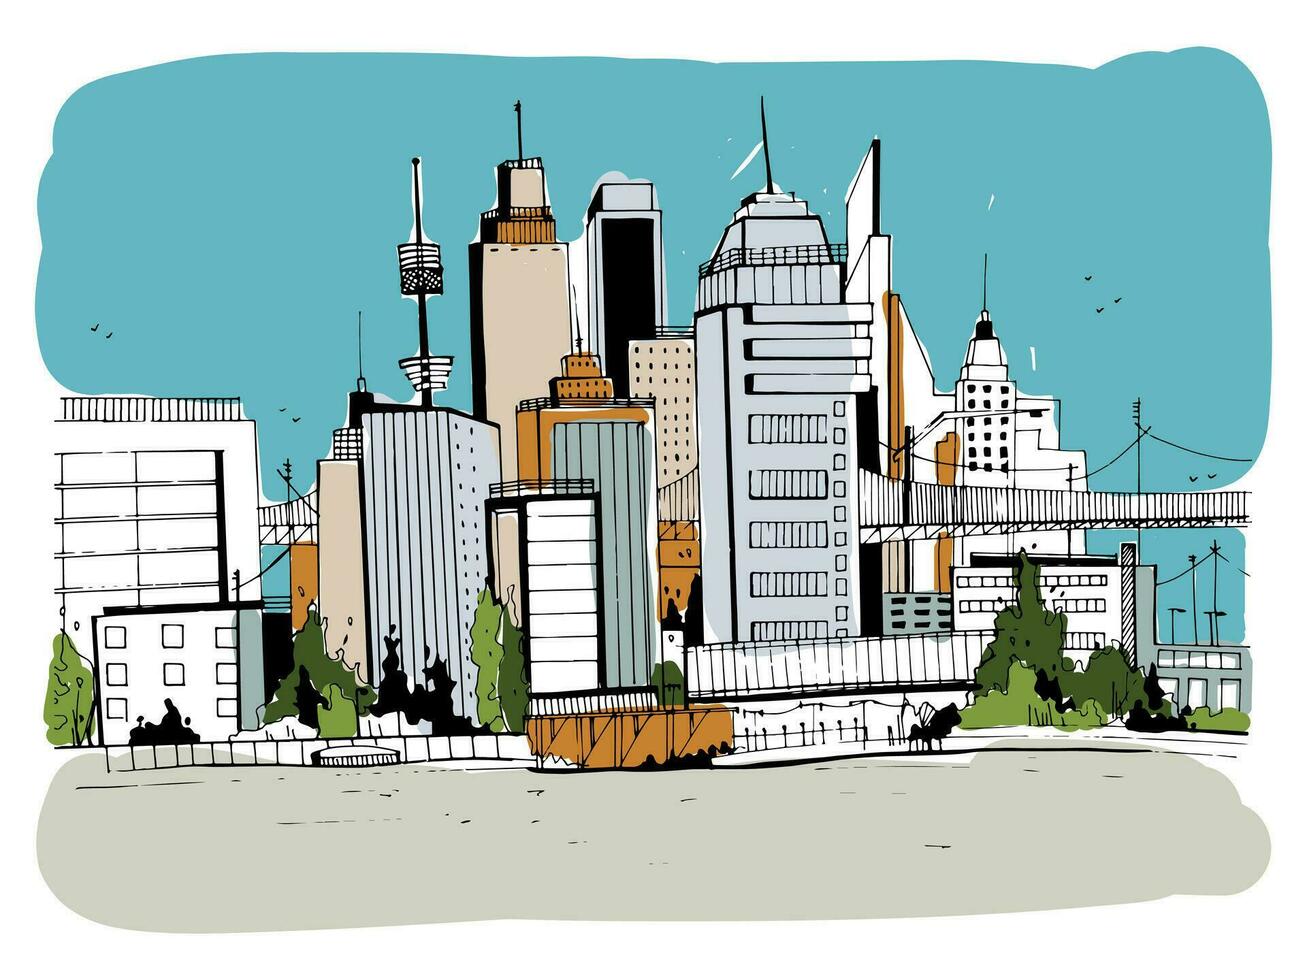 megalopolis stad, straat illustratie. hand- getrokken kleurrijk schetsen landschap met gebouwen, stadsgezicht, kantoor in schets stijl. retro ansichtkaart ontwerp. vector